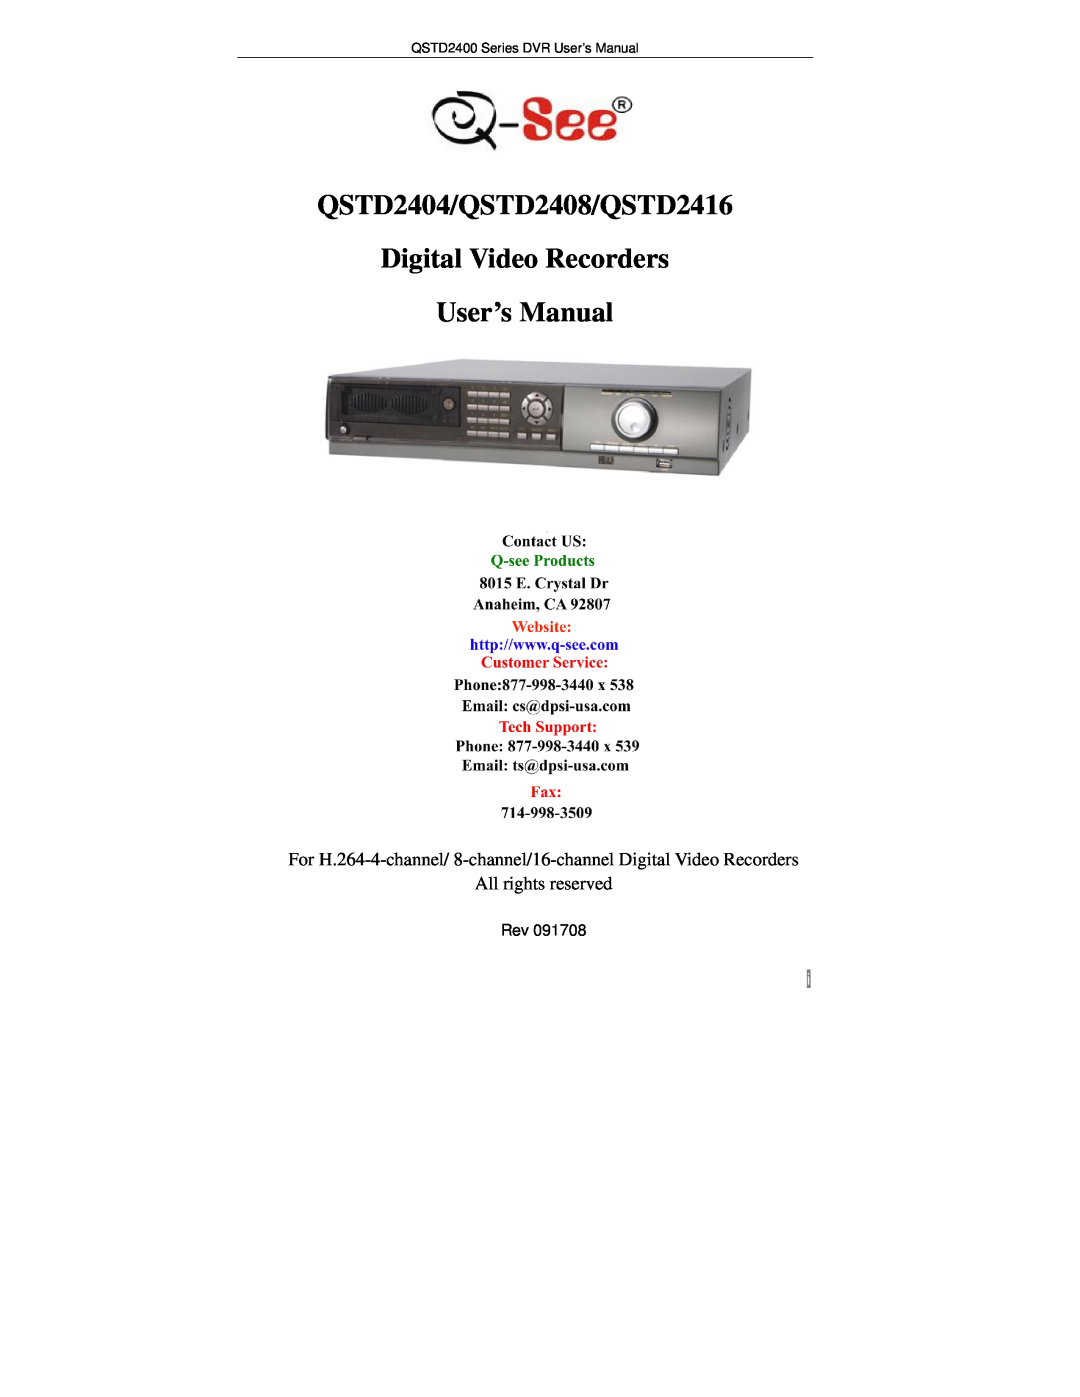 Q-See user manual QSTD2404/QSTD2408/QSTD2416, Digital Video Recorders User’s Manual, All rights reserved 